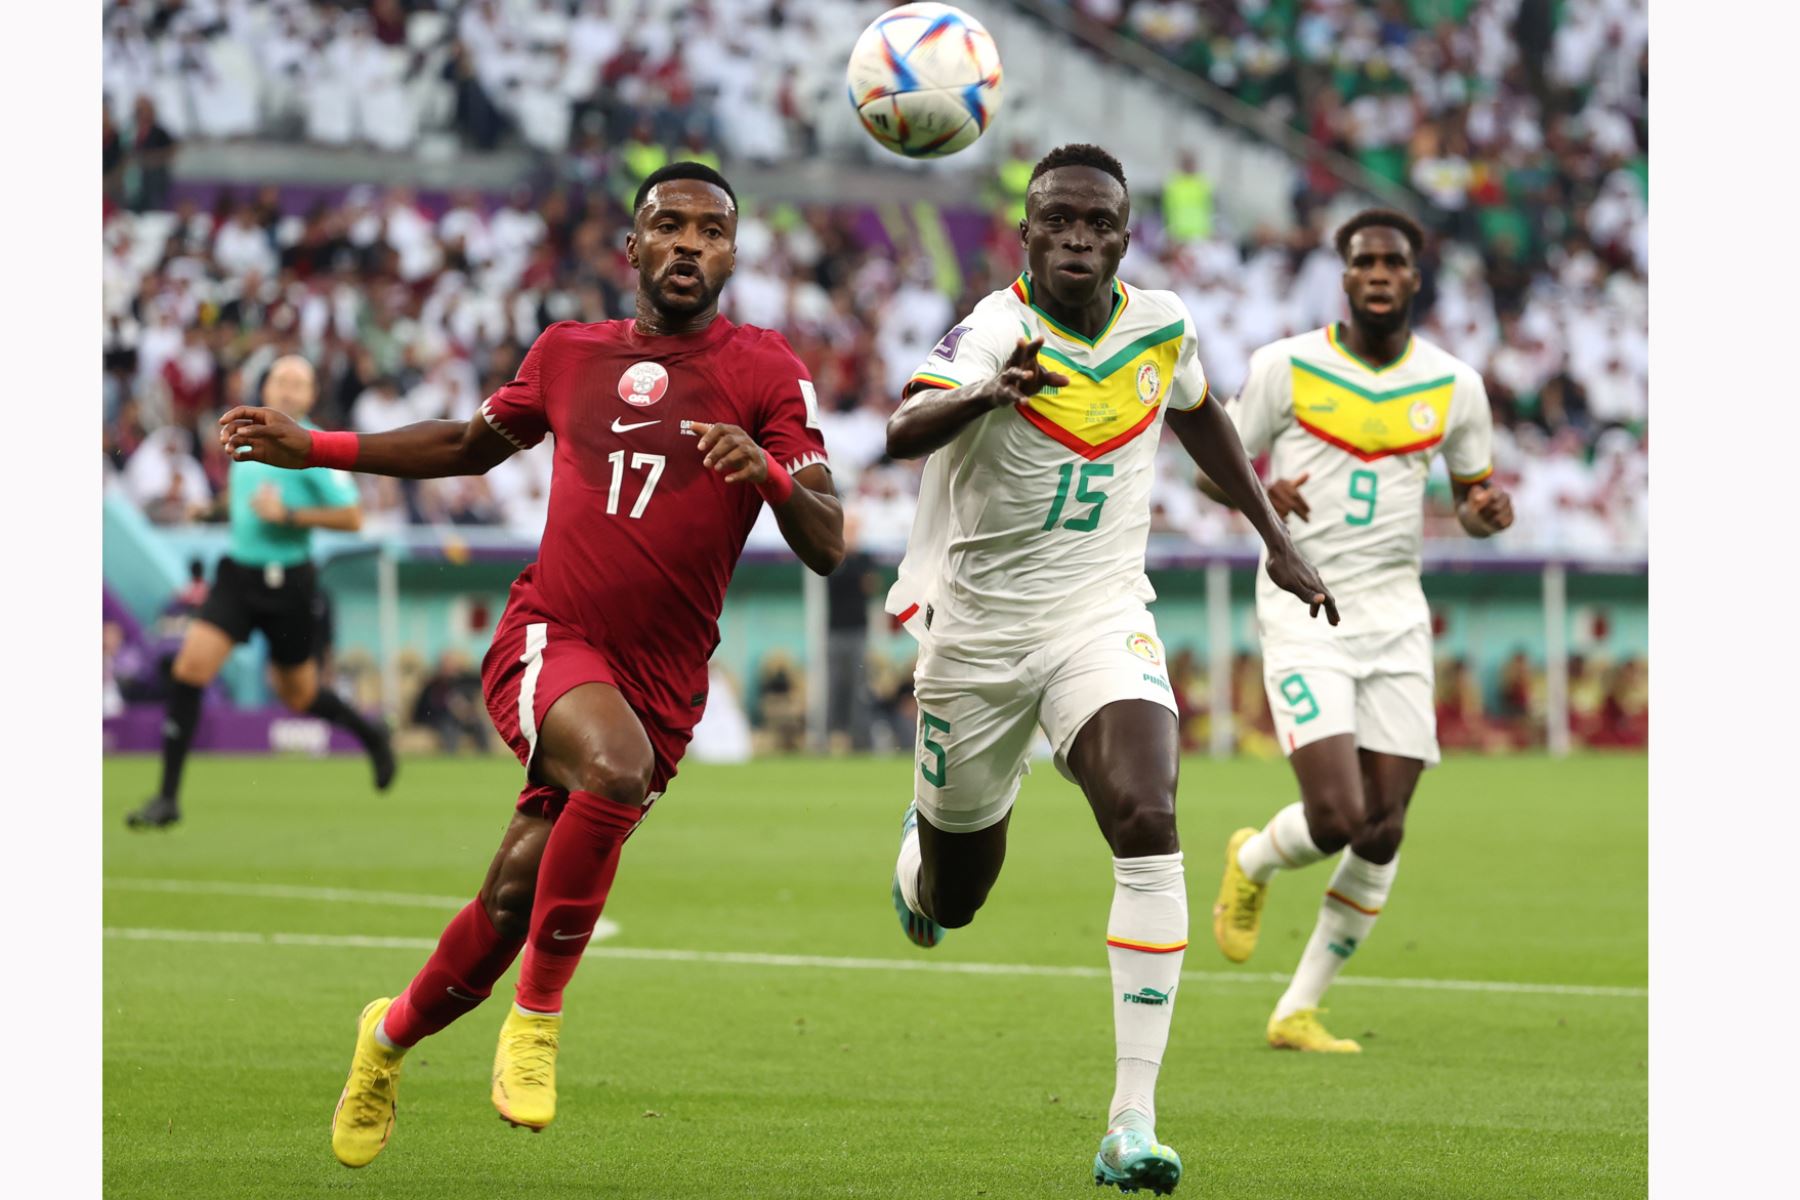 Ismail Mohamad de Catar en acción contra Krepin Diatta de Senegal durante el partido de fútbol del grupo A de la Copa Mundial de la FIFA 2022 entre Catar y Senegal en el Estadio Al Thumama en Doha, Catar. Foto: EFE